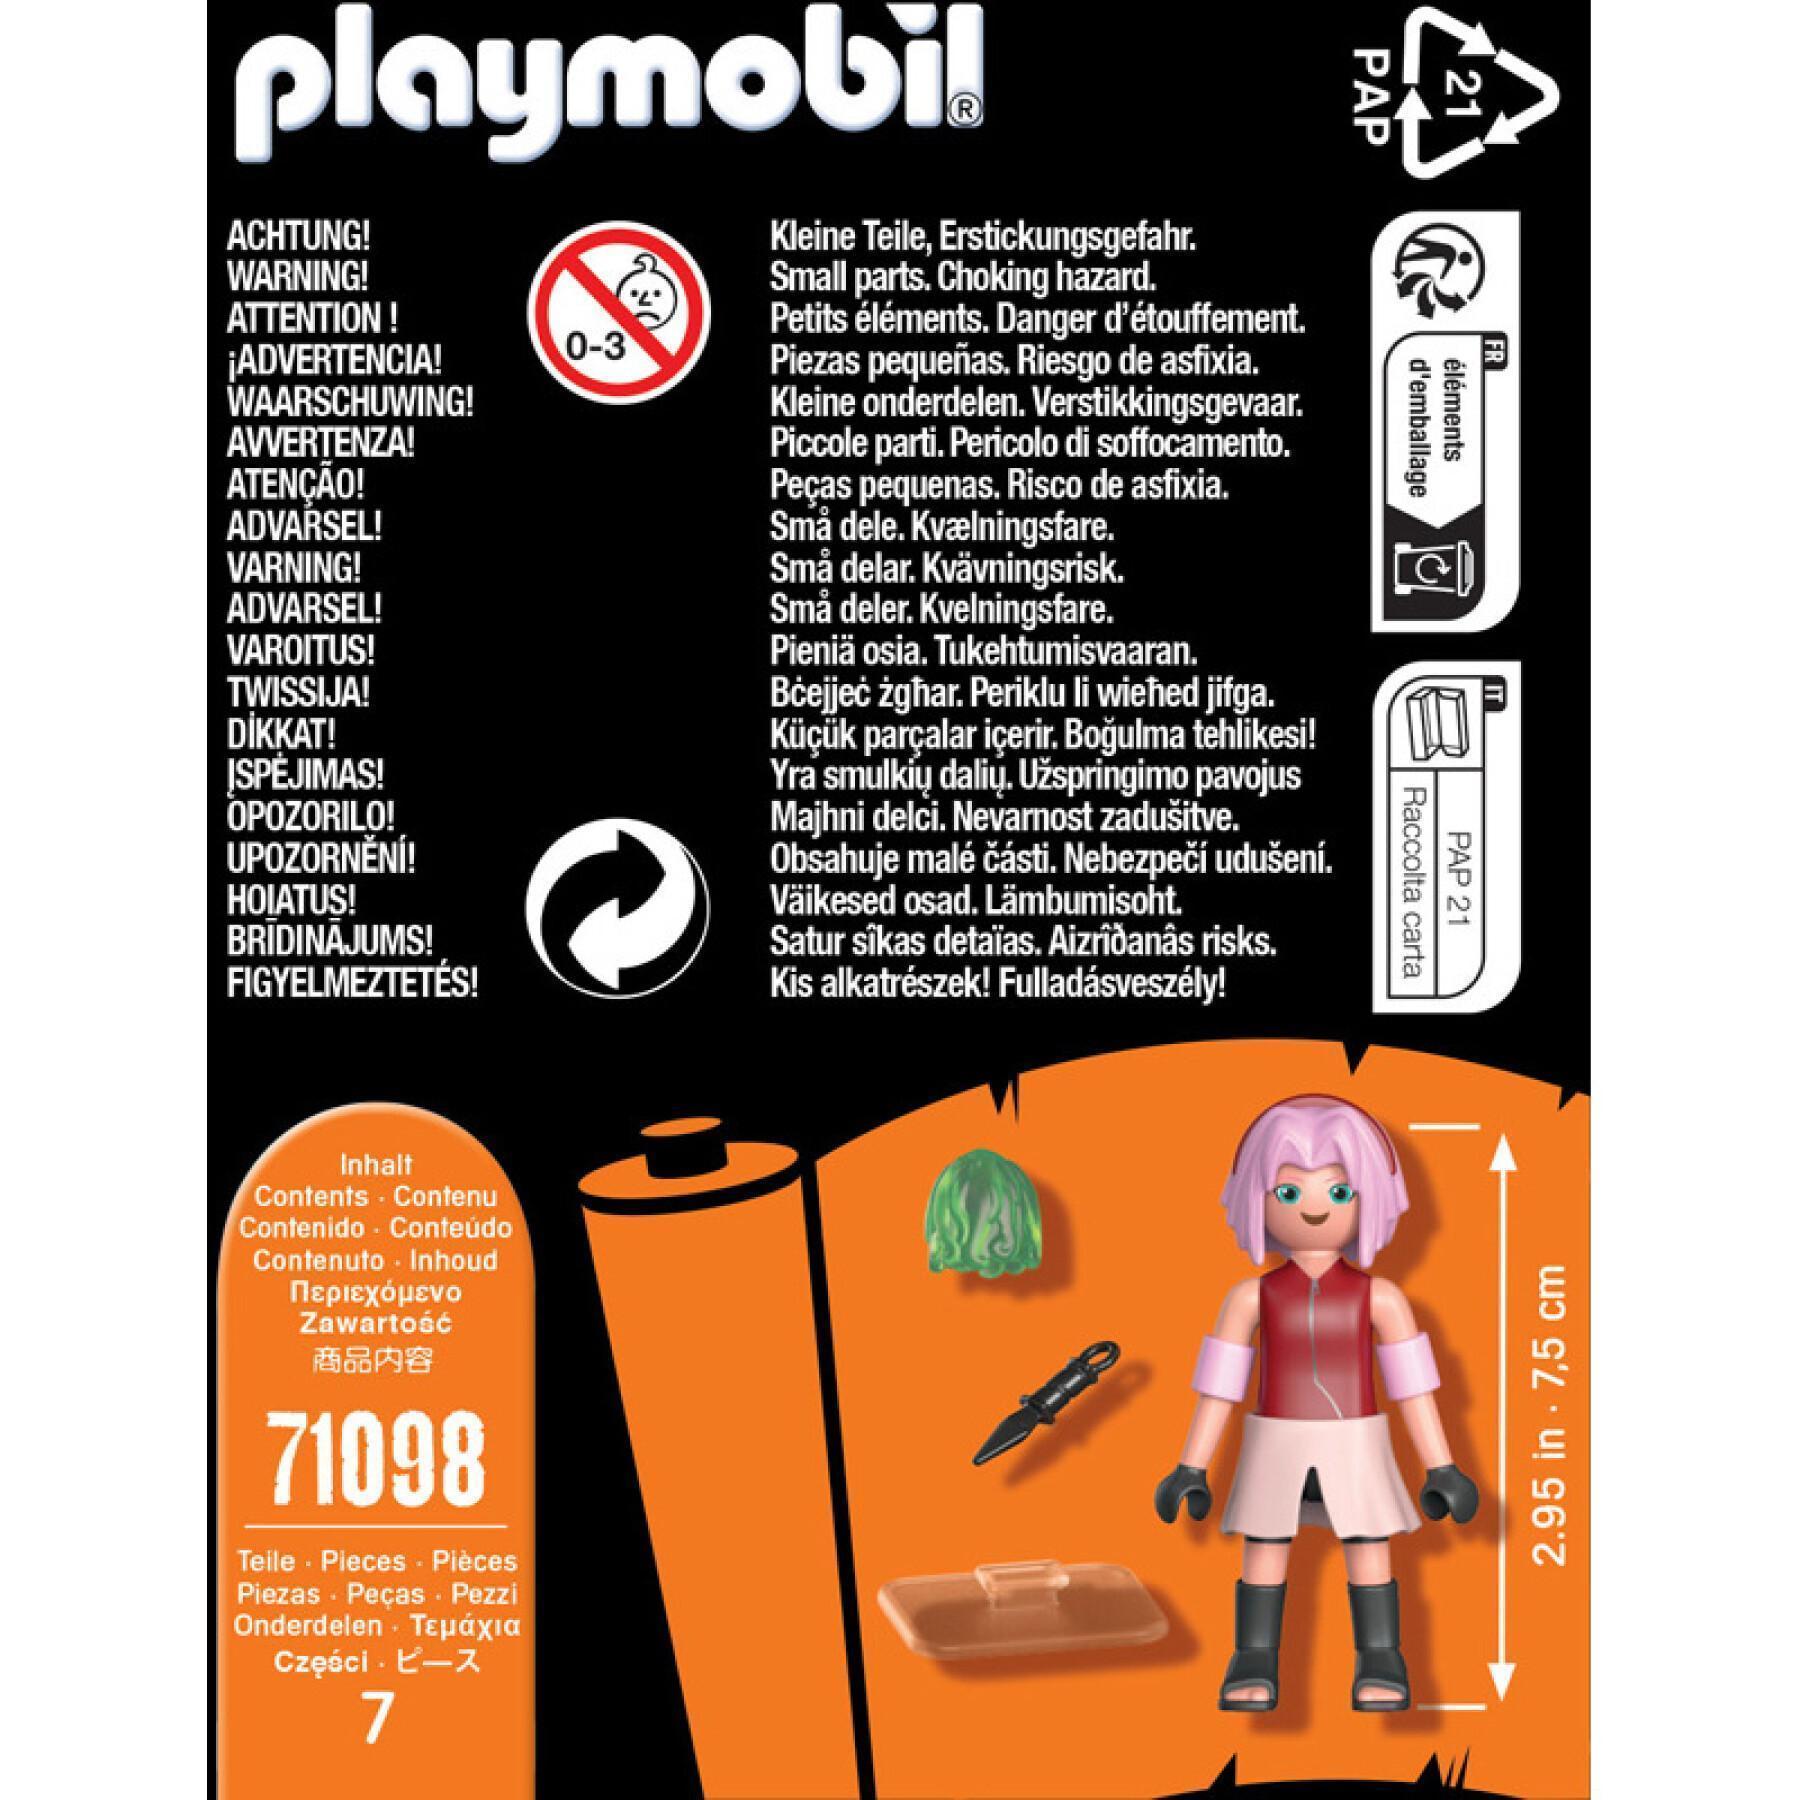 Figurinekura naruto Playmobil